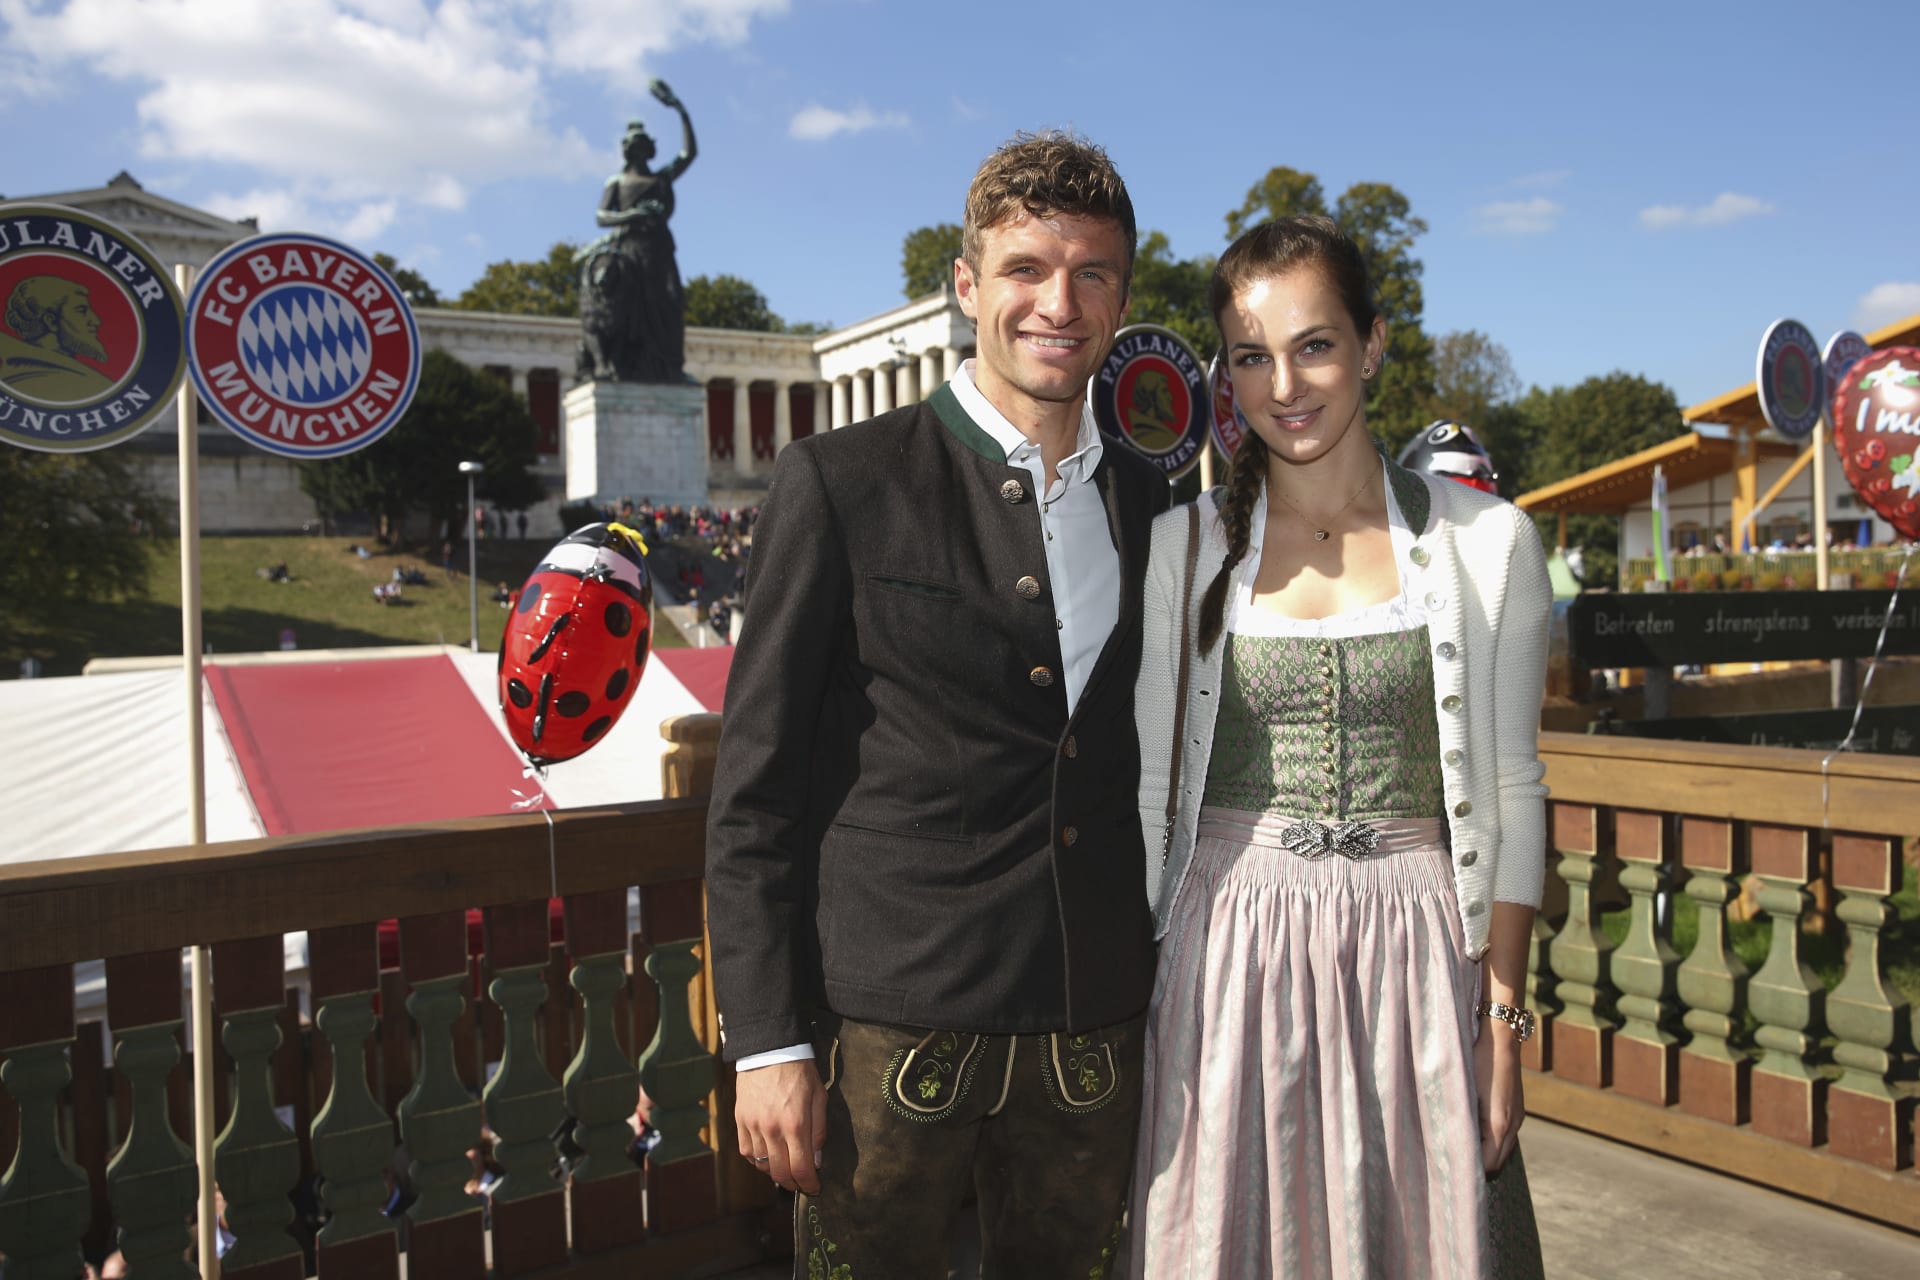 Oktoberfestu se tradičně účastní také fotbalisté Bayernu Mnichov s manželkami či přítelkyněmi, také proto, že pivovar Paulaner je jedním z hlavním sponzorů klubu. V roce 2015 dorazil i útočník Thomas Müller s chotí Lisou. 